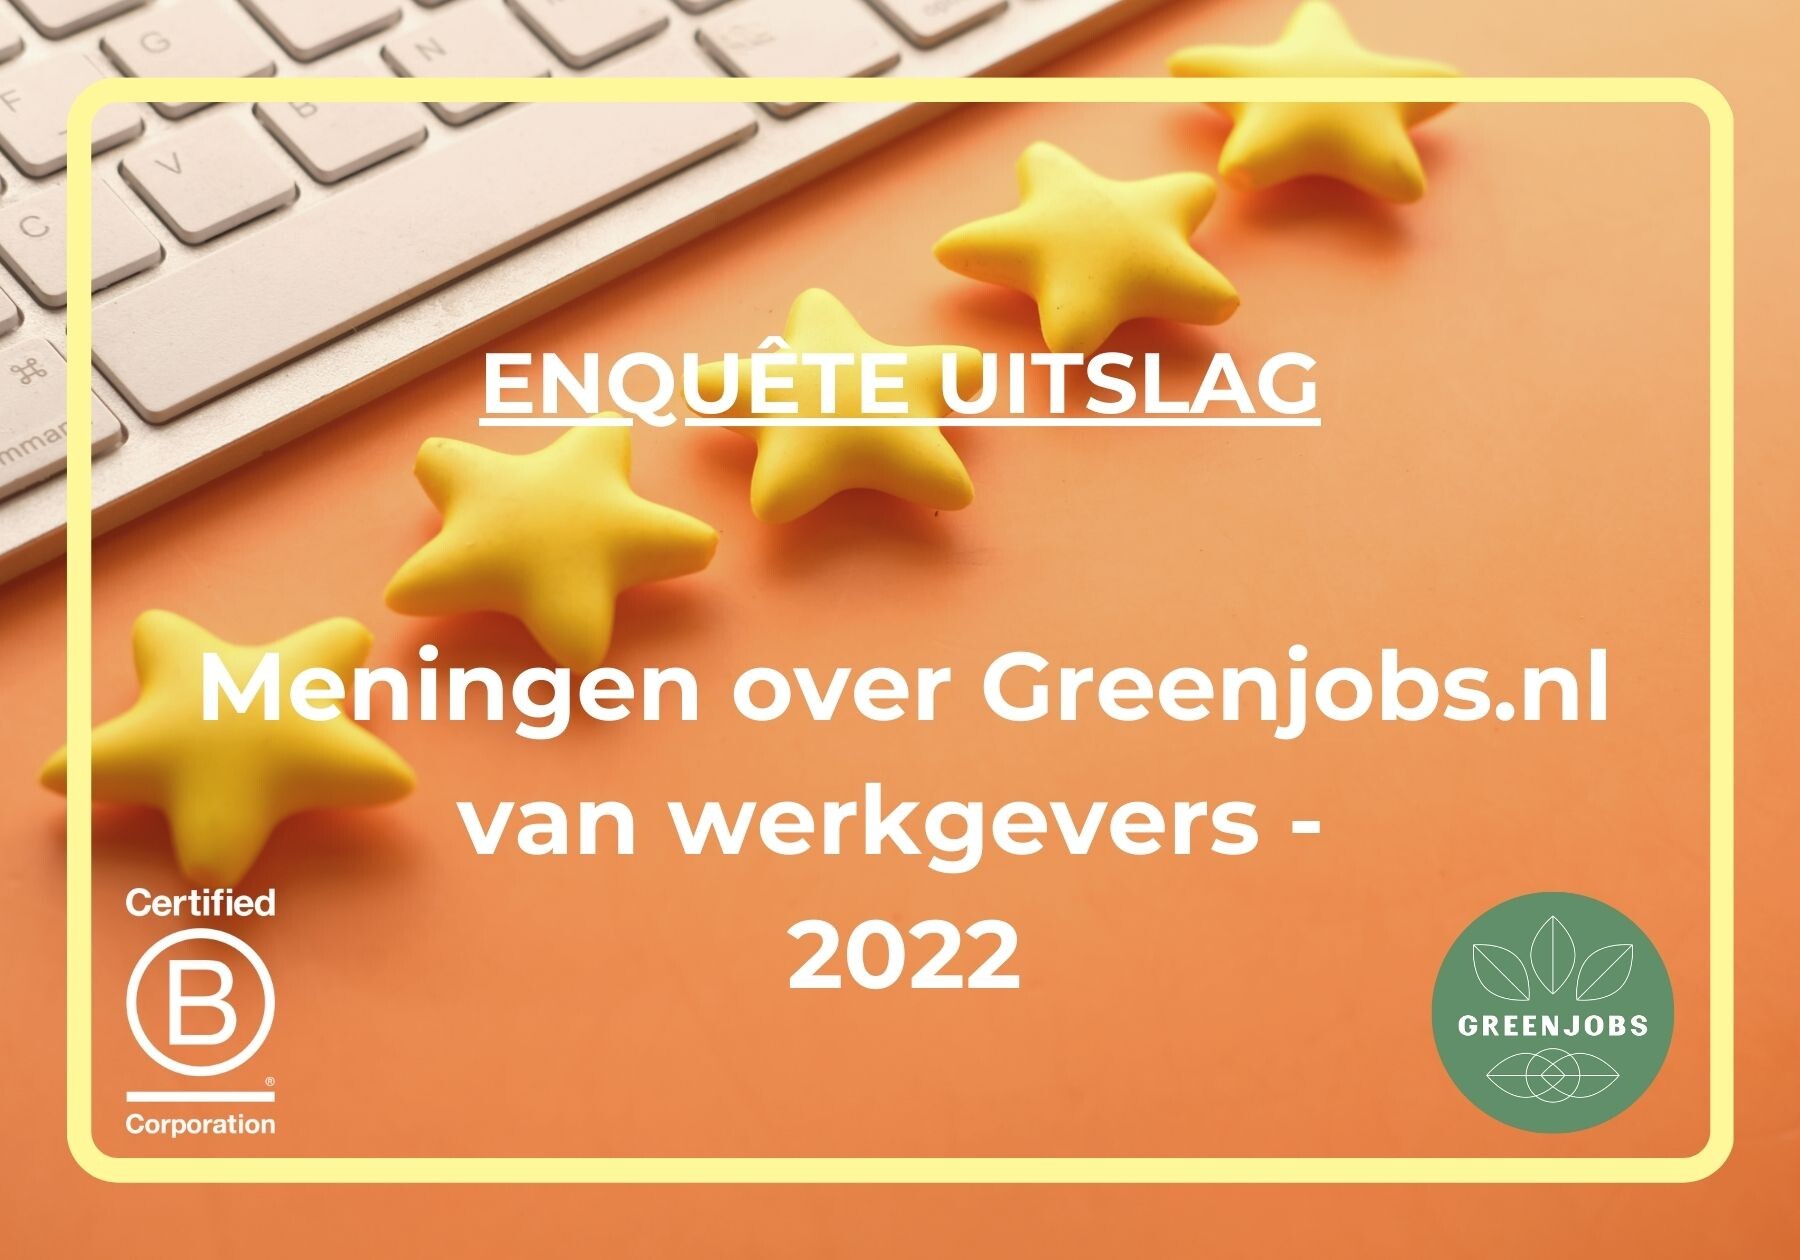 Enquête uitslag - Meningen over Greenjobs.nl van werkgevers